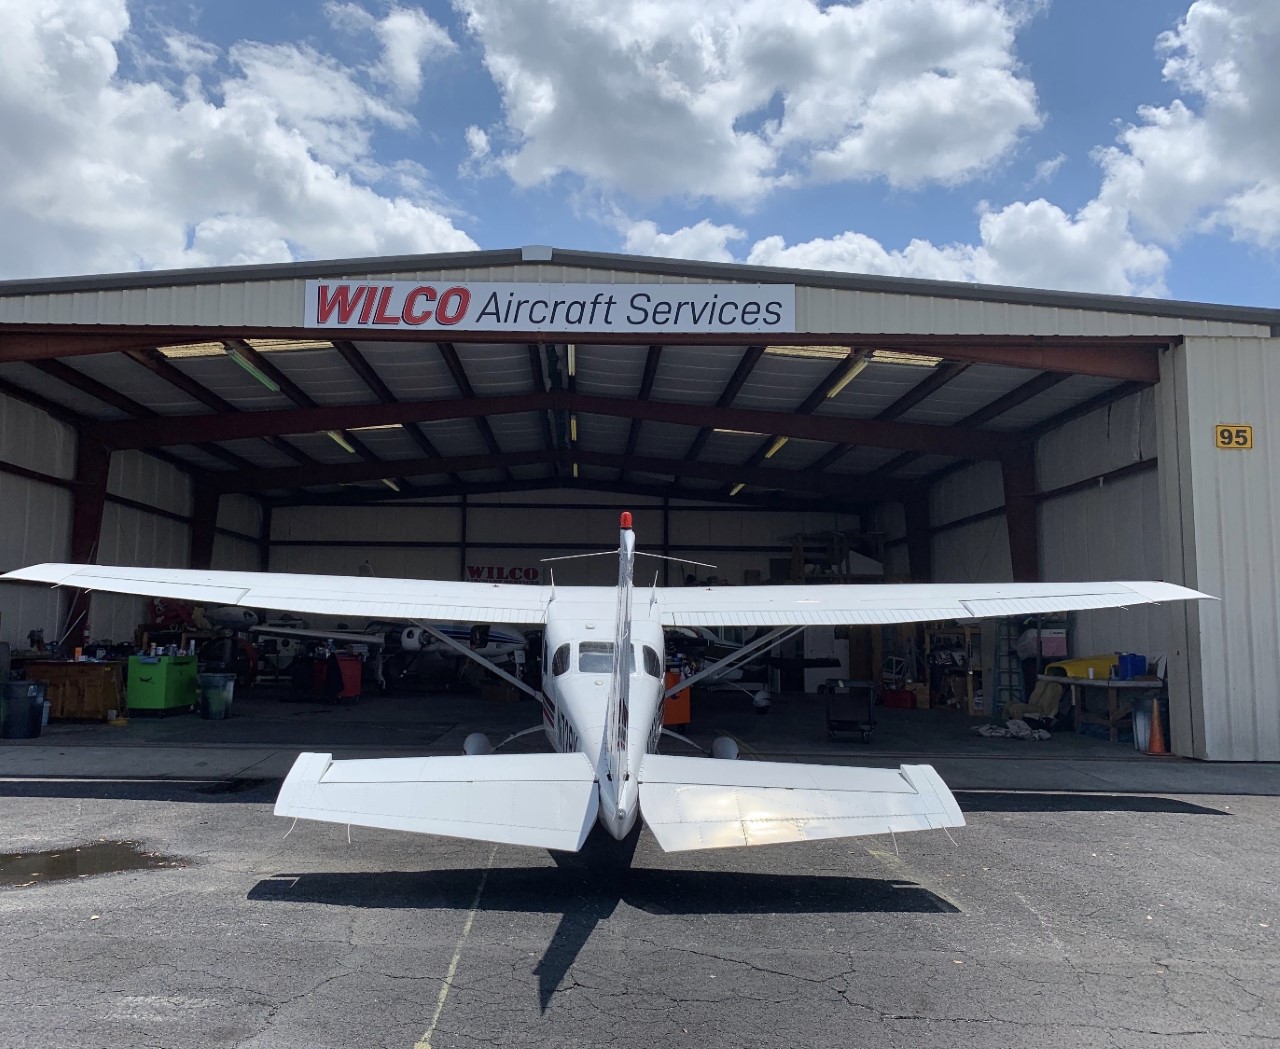 Wilco Aircraft Services